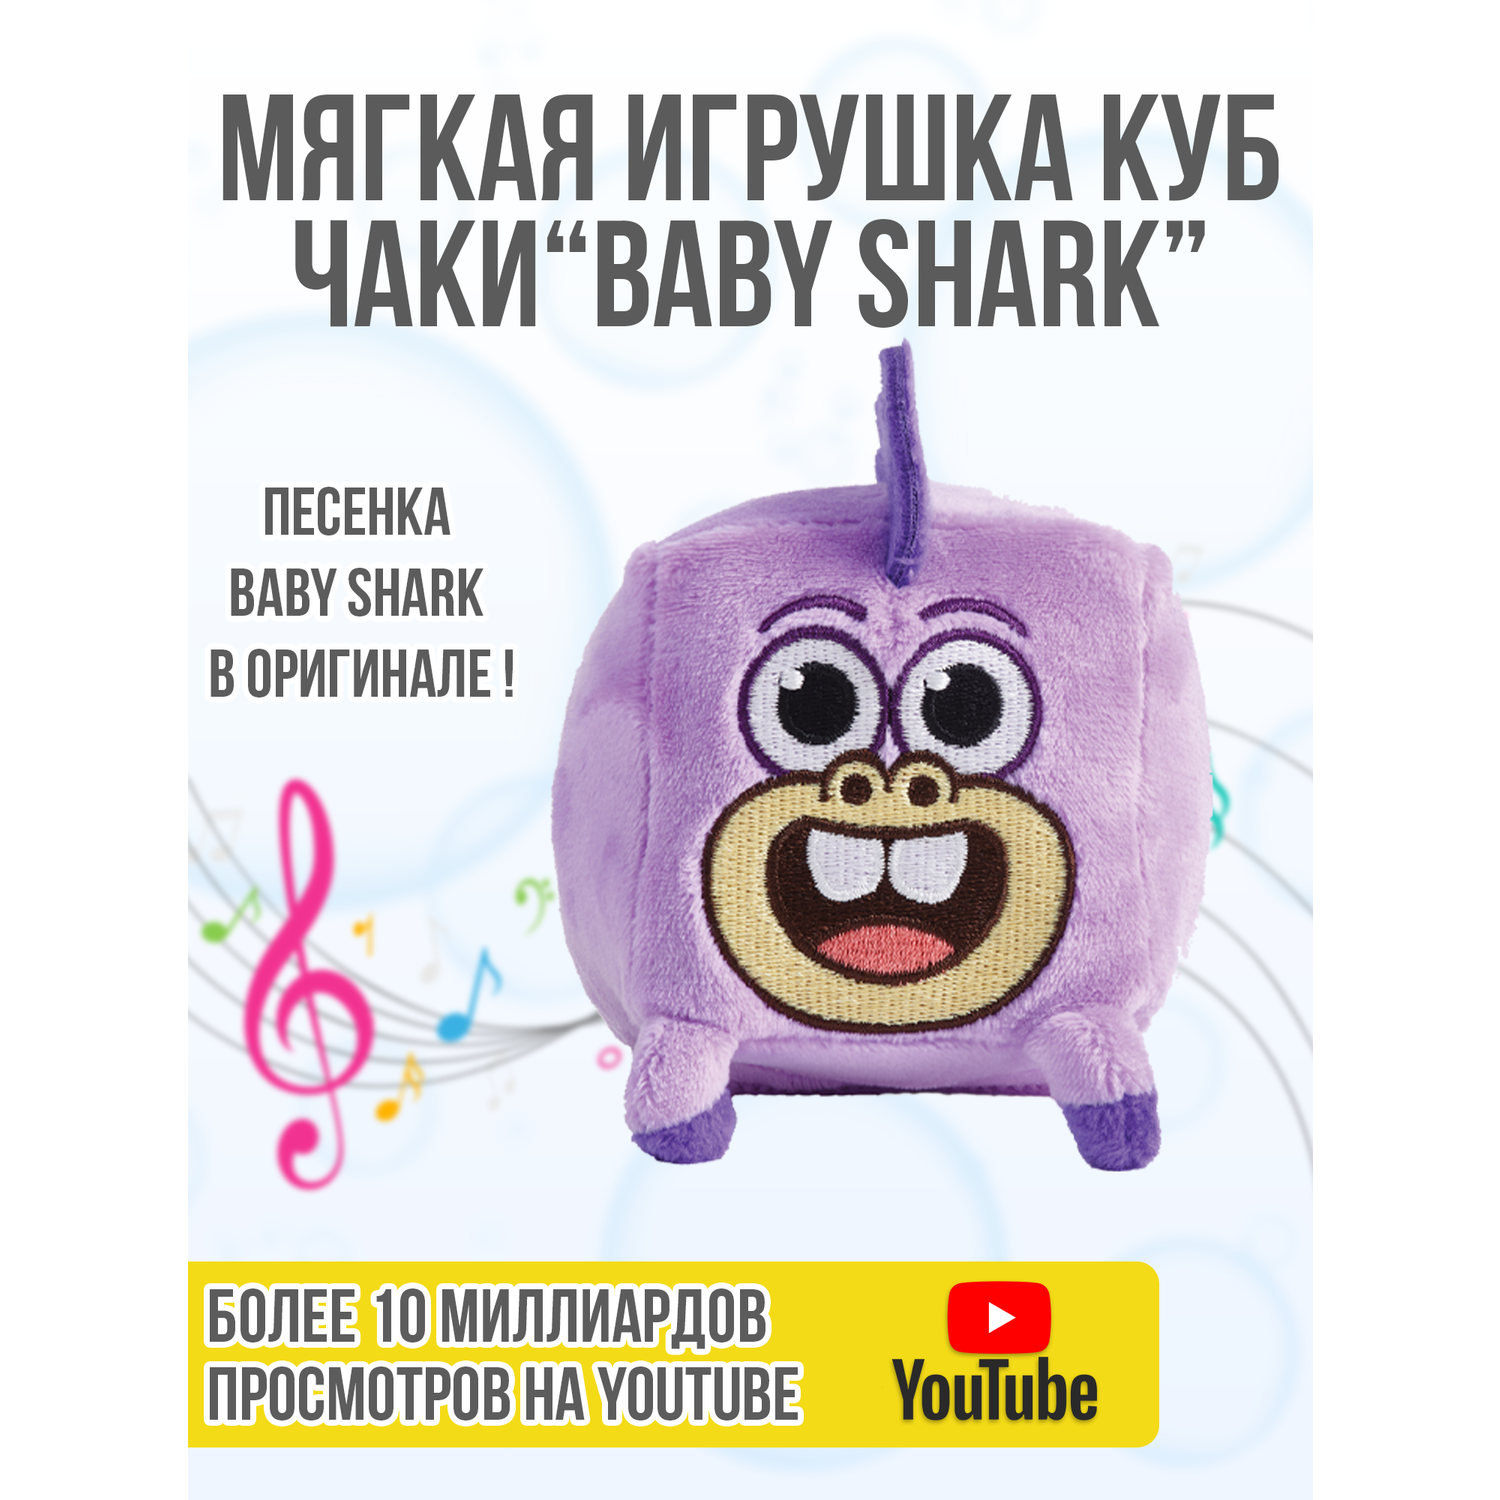 Плюшевый кубик Wow Wee Музыкальный друзья Baby Shark Чаки 61508 - фото 4